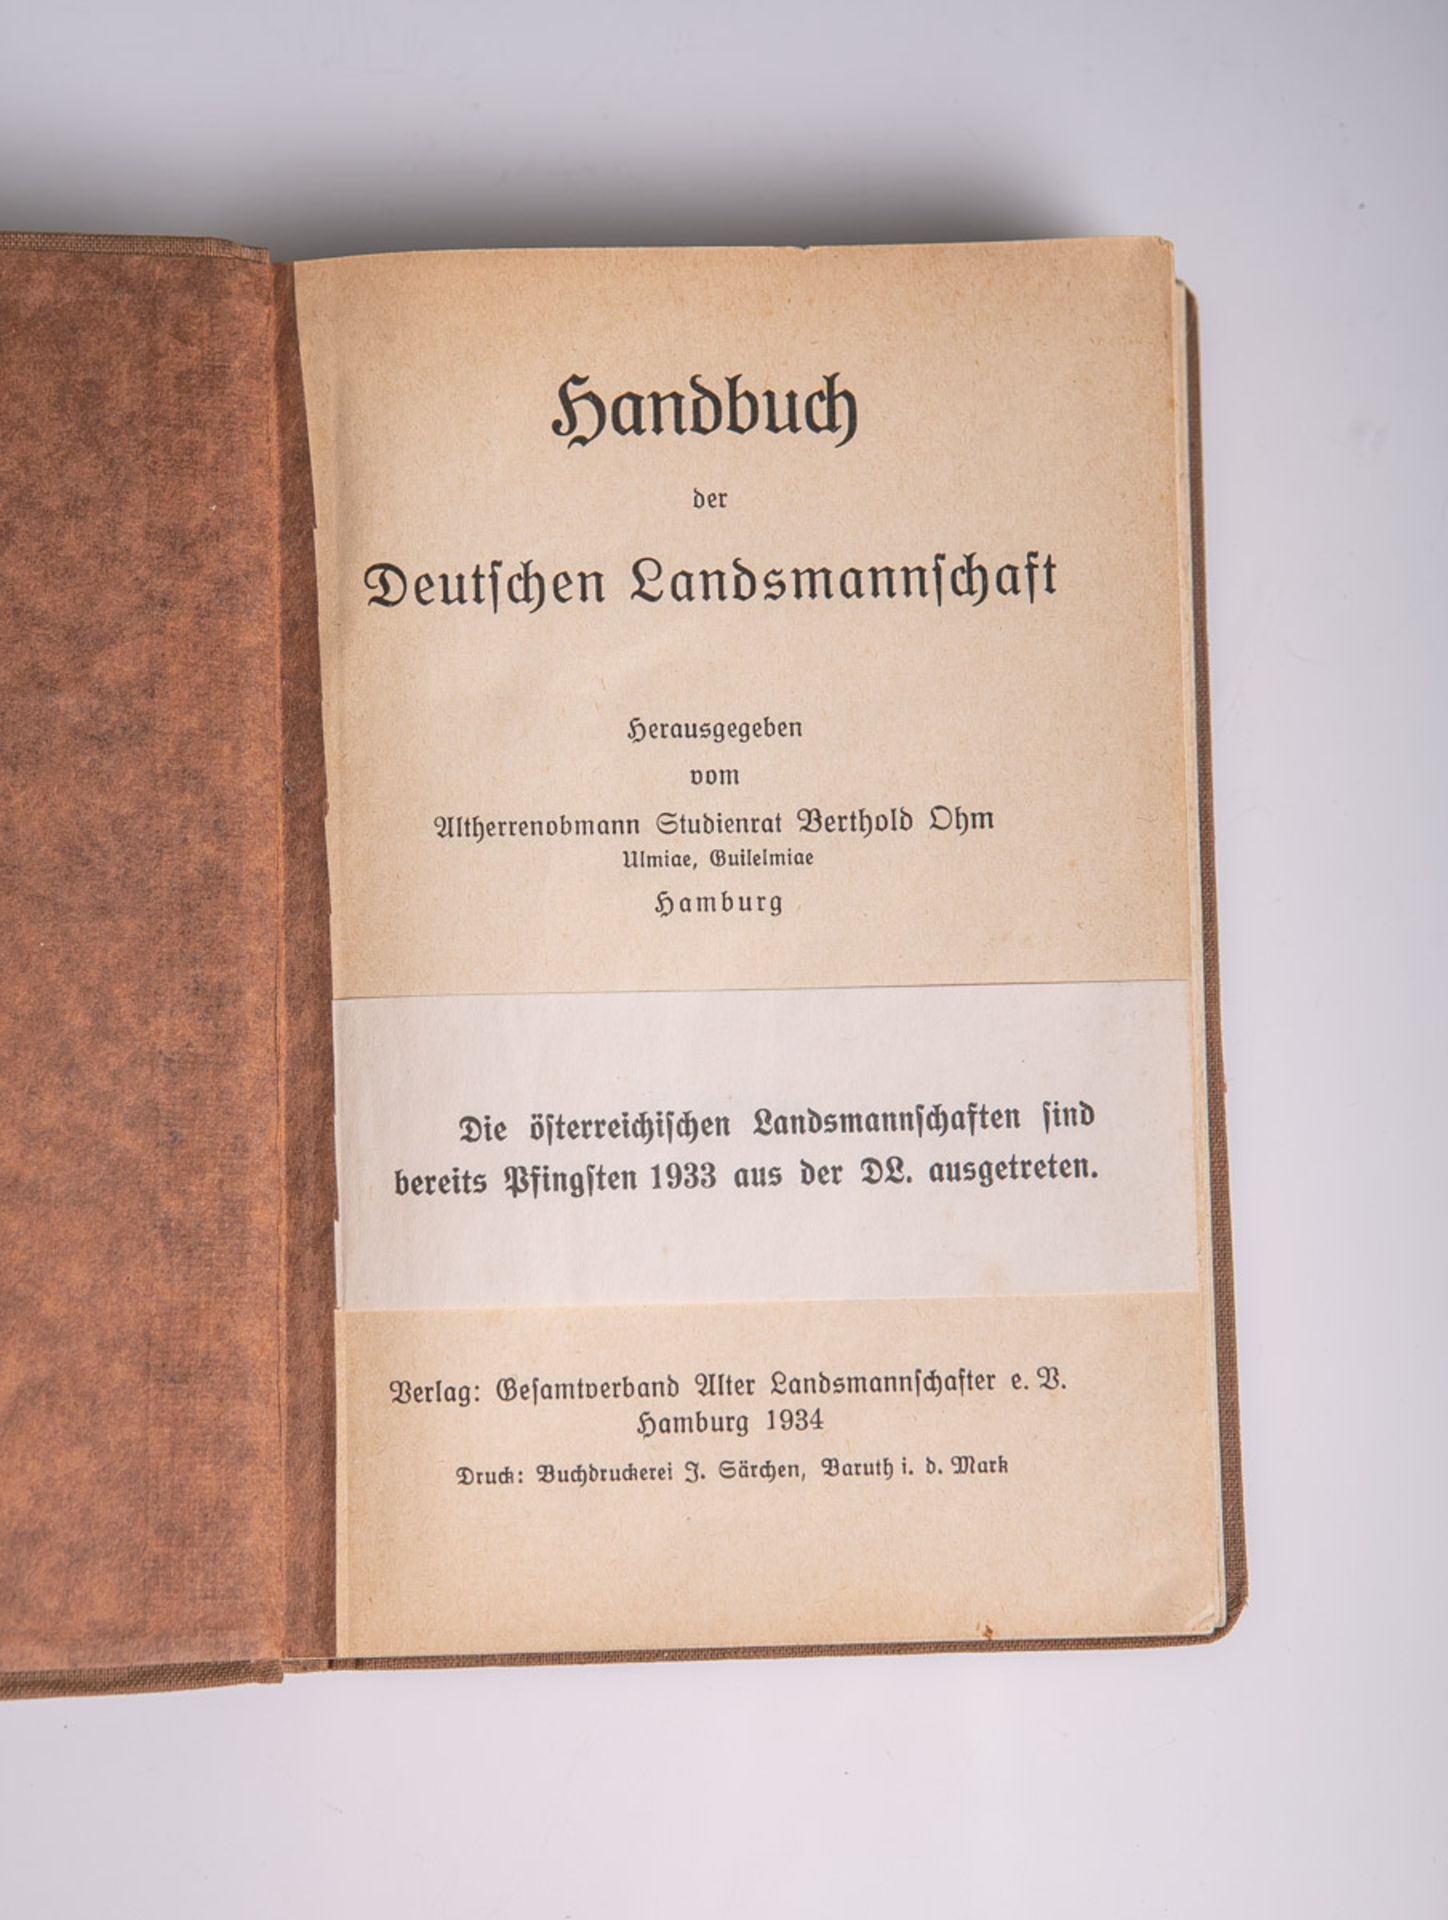 Ohm, Berthold, Altherrenobmann Studienrat (Hrsg.), "Handbuch der Deutschen